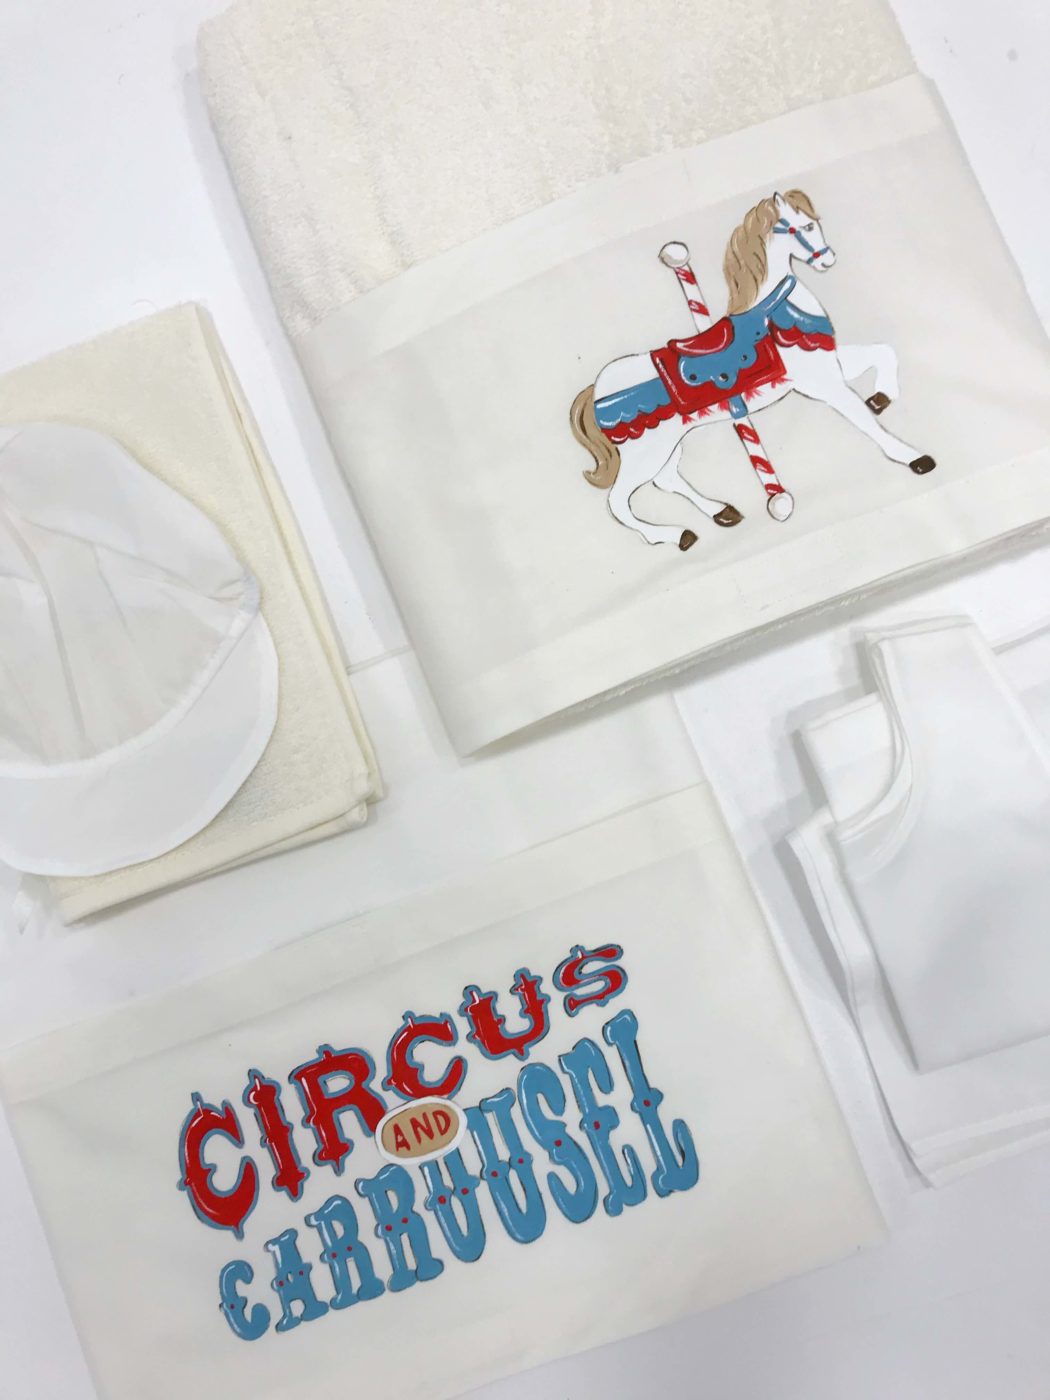 Circus carousel 2